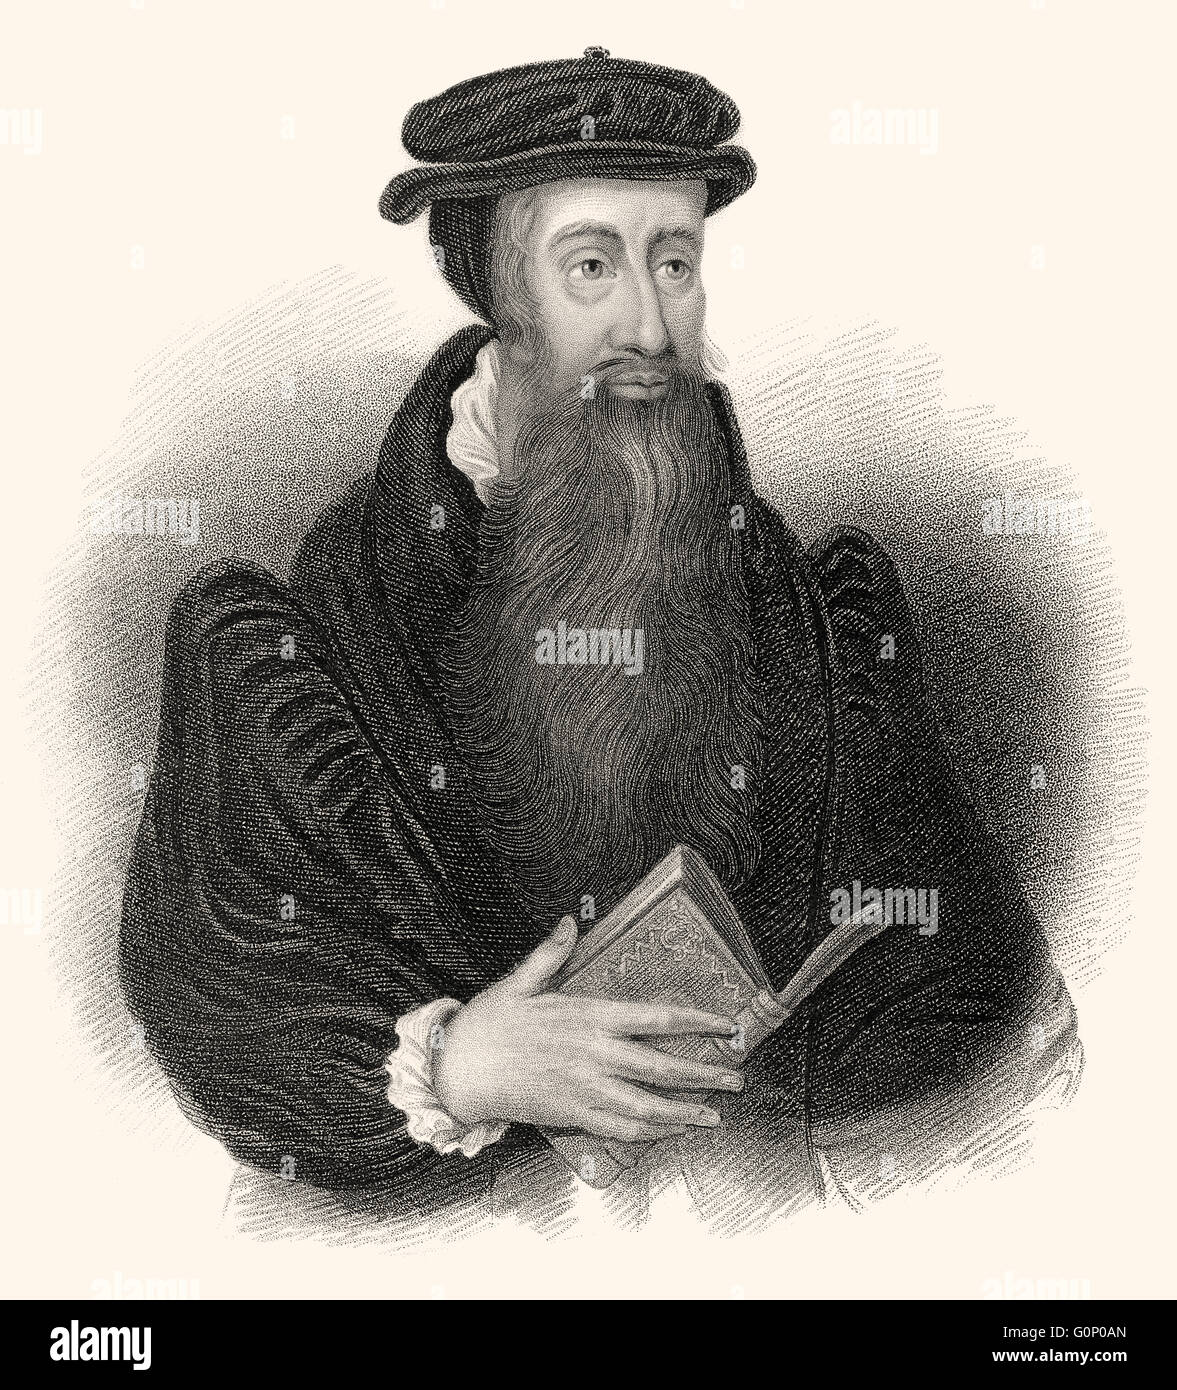 John Knox, c. 1514-1572, ein schottischer Geistlicher, Schriftsteller und einer der Führer der protestantischen Reformation Stockfoto